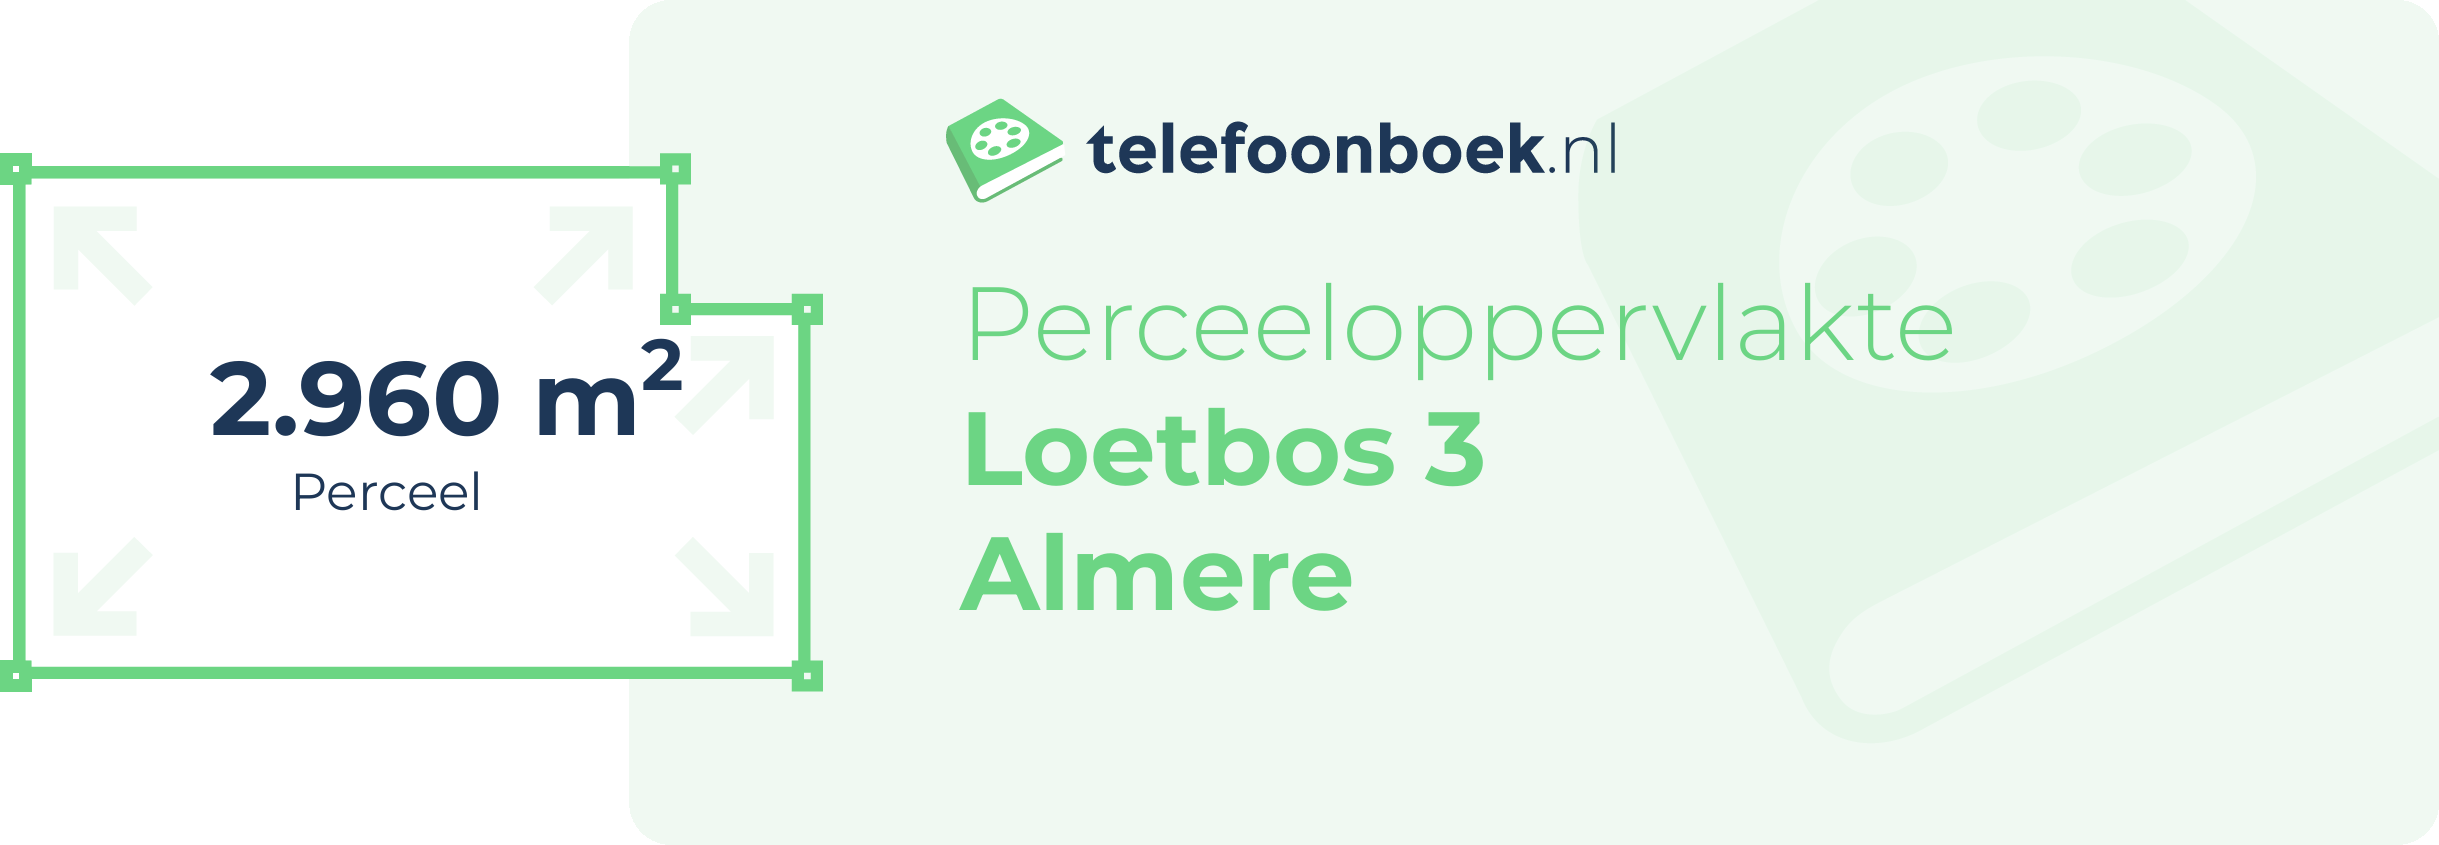 Perceeloppervlakte Loetbos 3 Almere